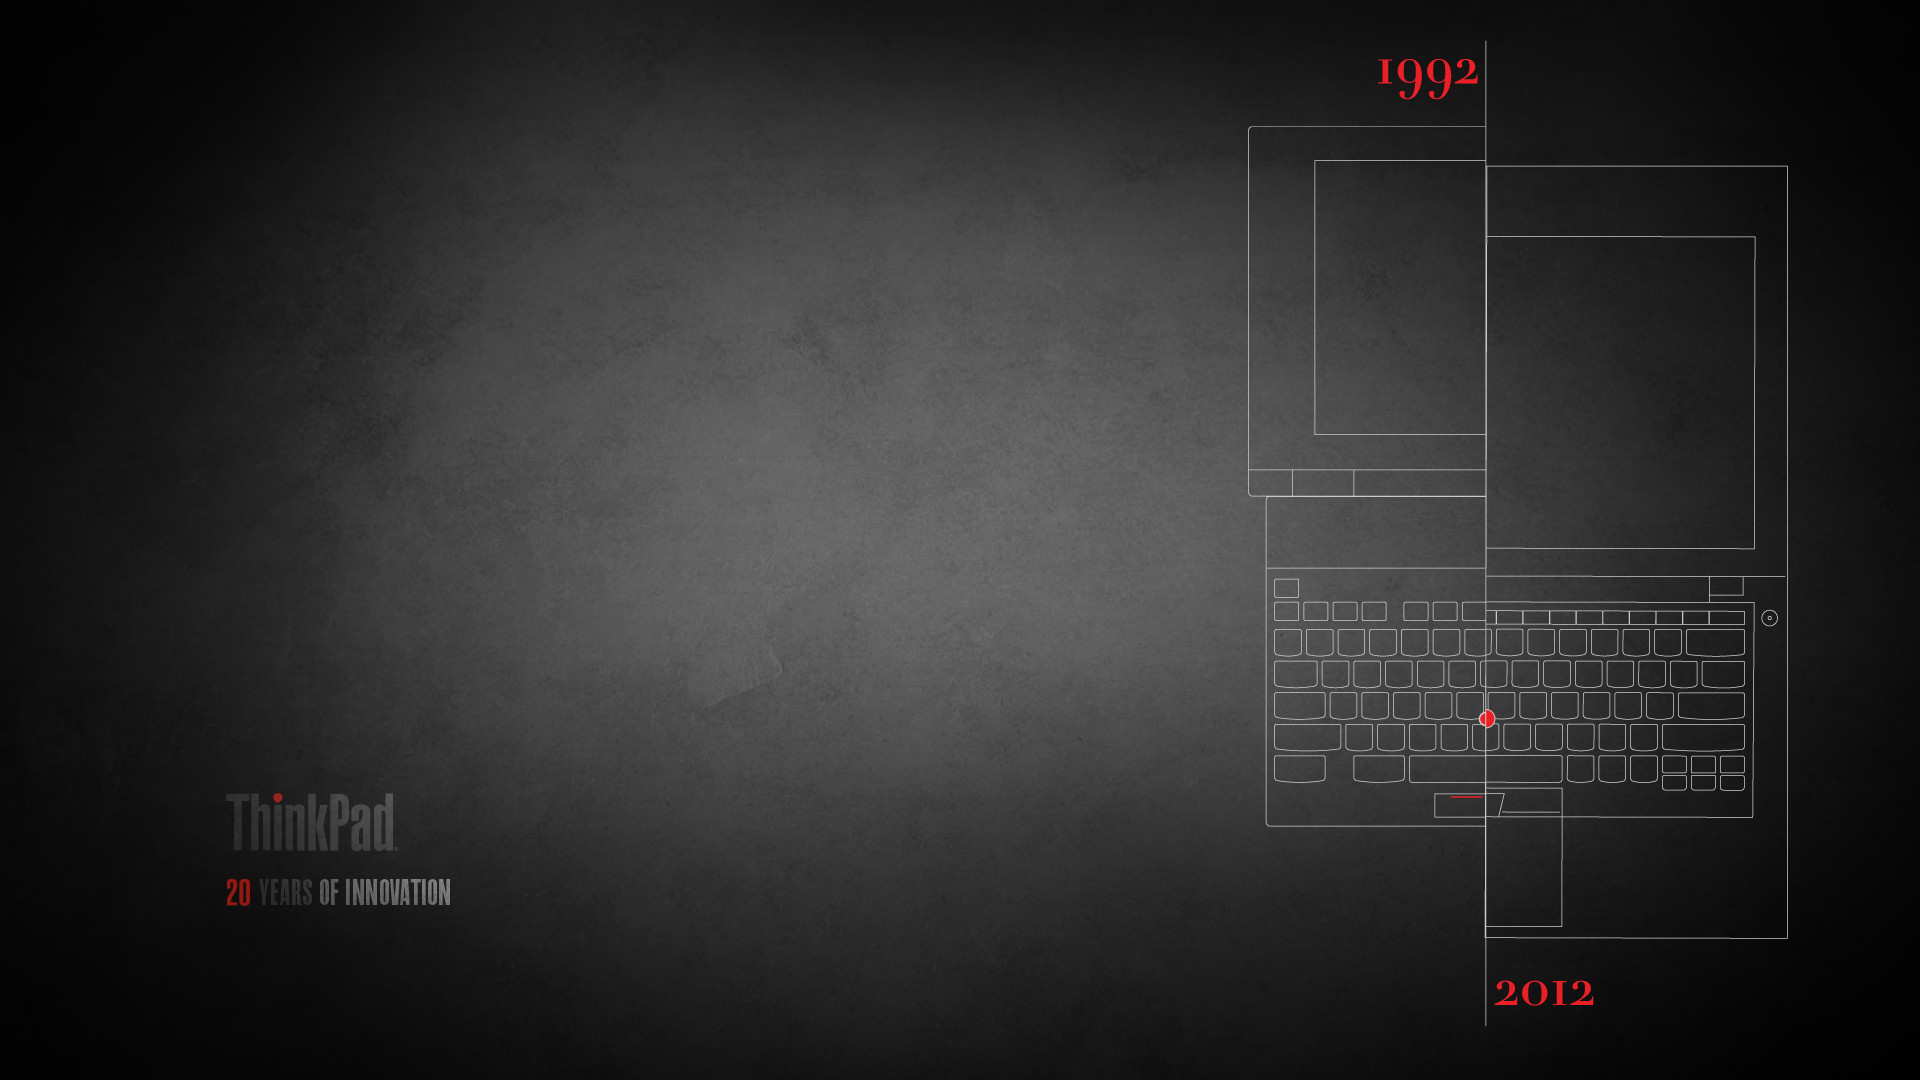 1920x1080 ThinkPadæ¡é¢ç¾åãå¾æ ãå£çº¸ãé¼ æ ãQQè¾å¥æ³IBMç®è¤ï¼ç»çï¼ã-ThinkPad-èæ³ç¤¾åº